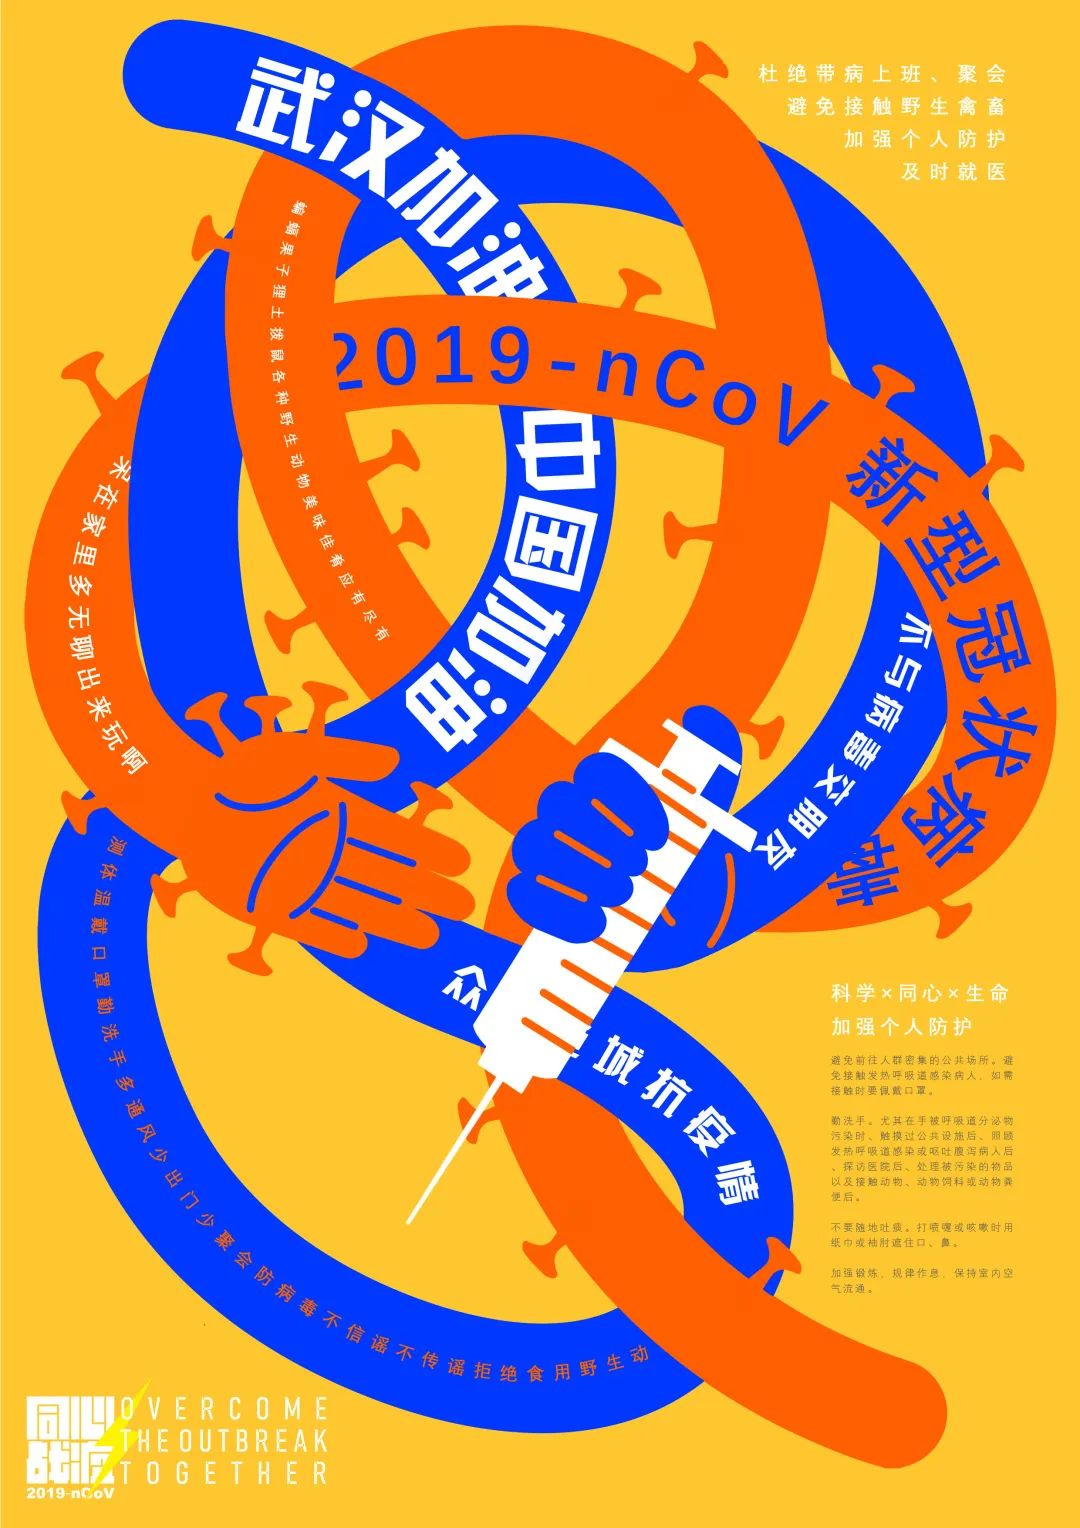 与爱同行 · 抗击病毒——2020年全国"战疫"海报设计大赛入选作品(四)